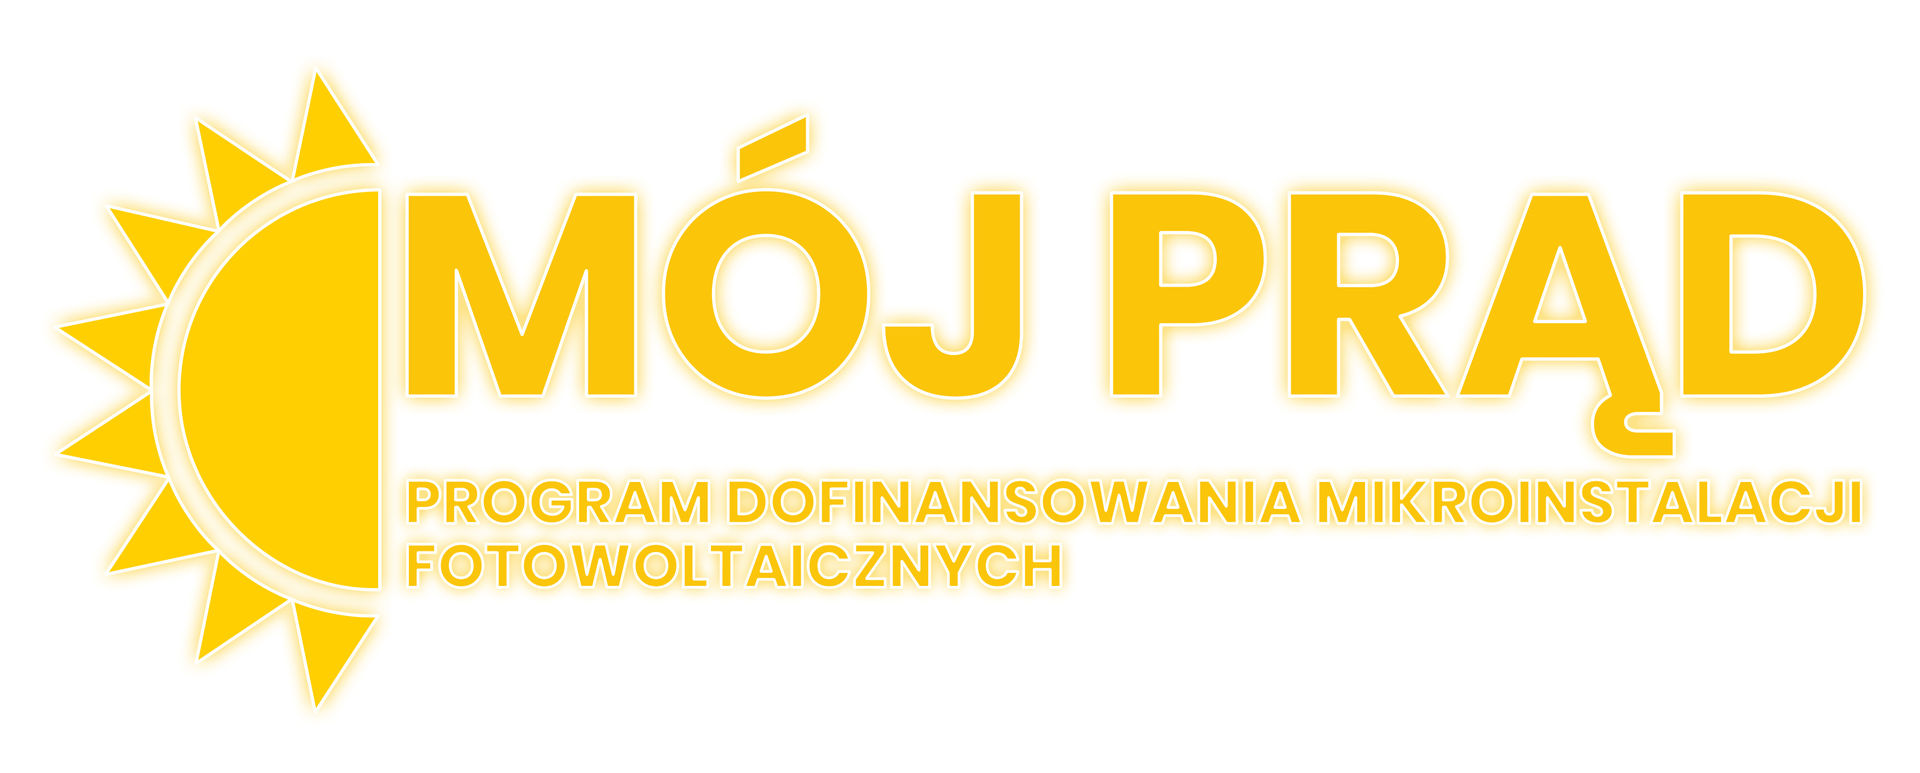 Logo Progarmu Dofinansowania Mikroinstalacji Fotowoltaicznych